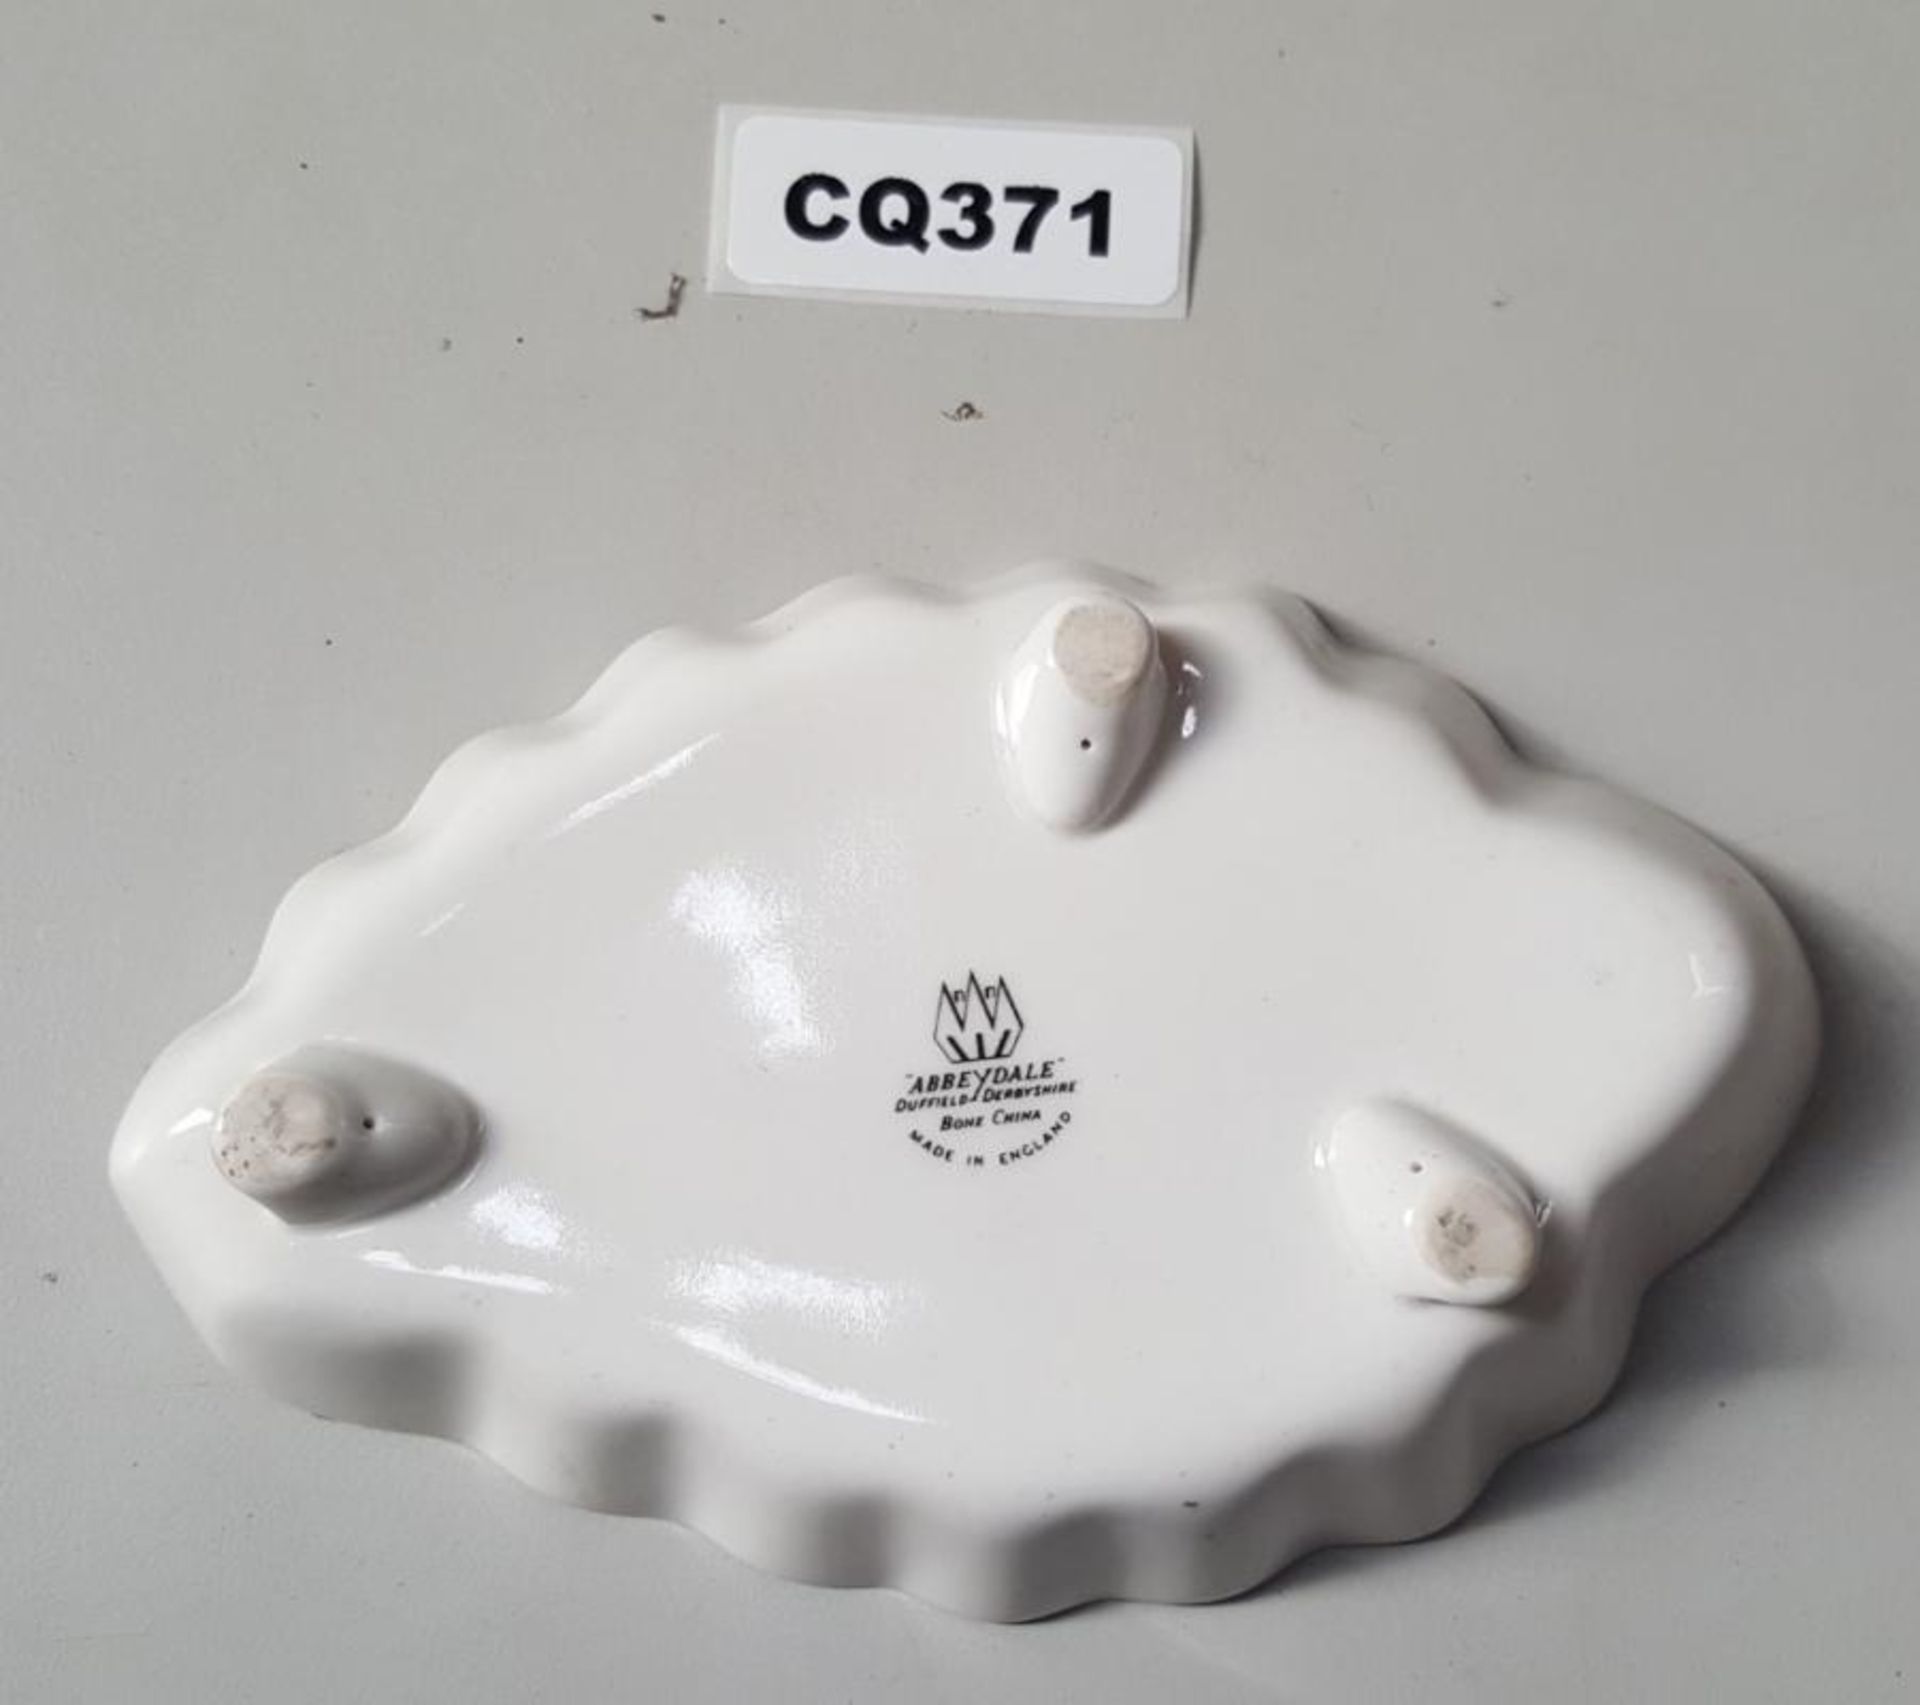 1 x Abbeydale Bone China Small Serving Dish - Ref CQ371 E - Dimensions: L17/W11cm - CL334 - Location - Image 2 of 3